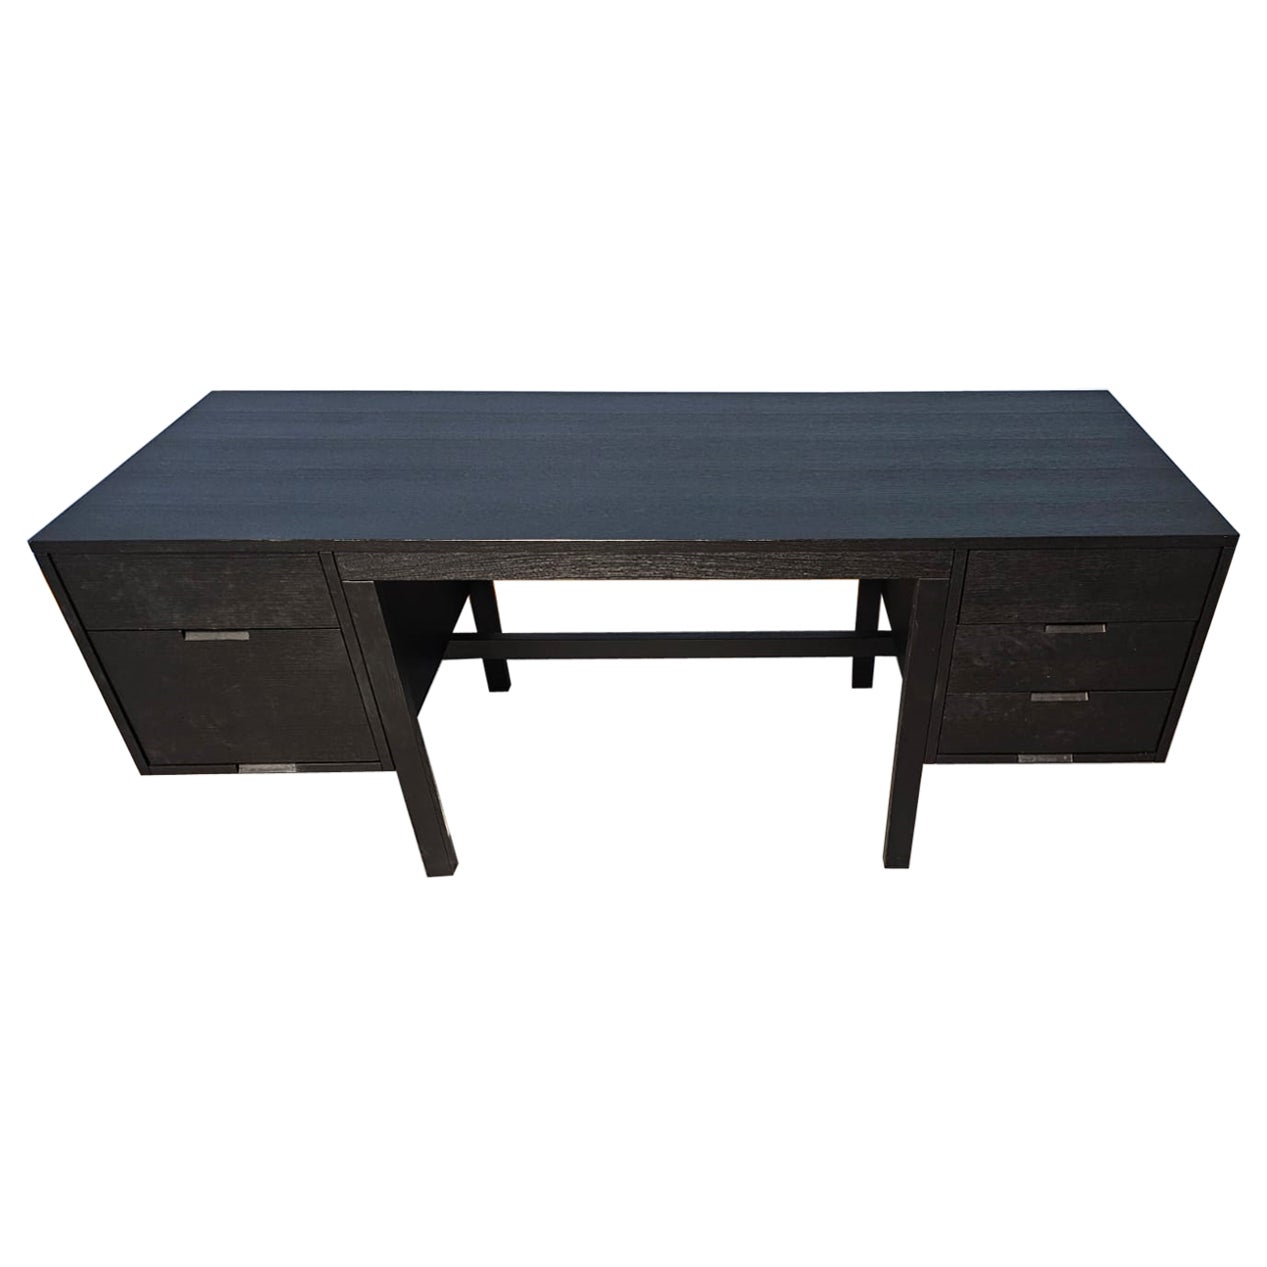 W80 Pecs Black Desk designed by Marcel Breuer for Simon by Cassina